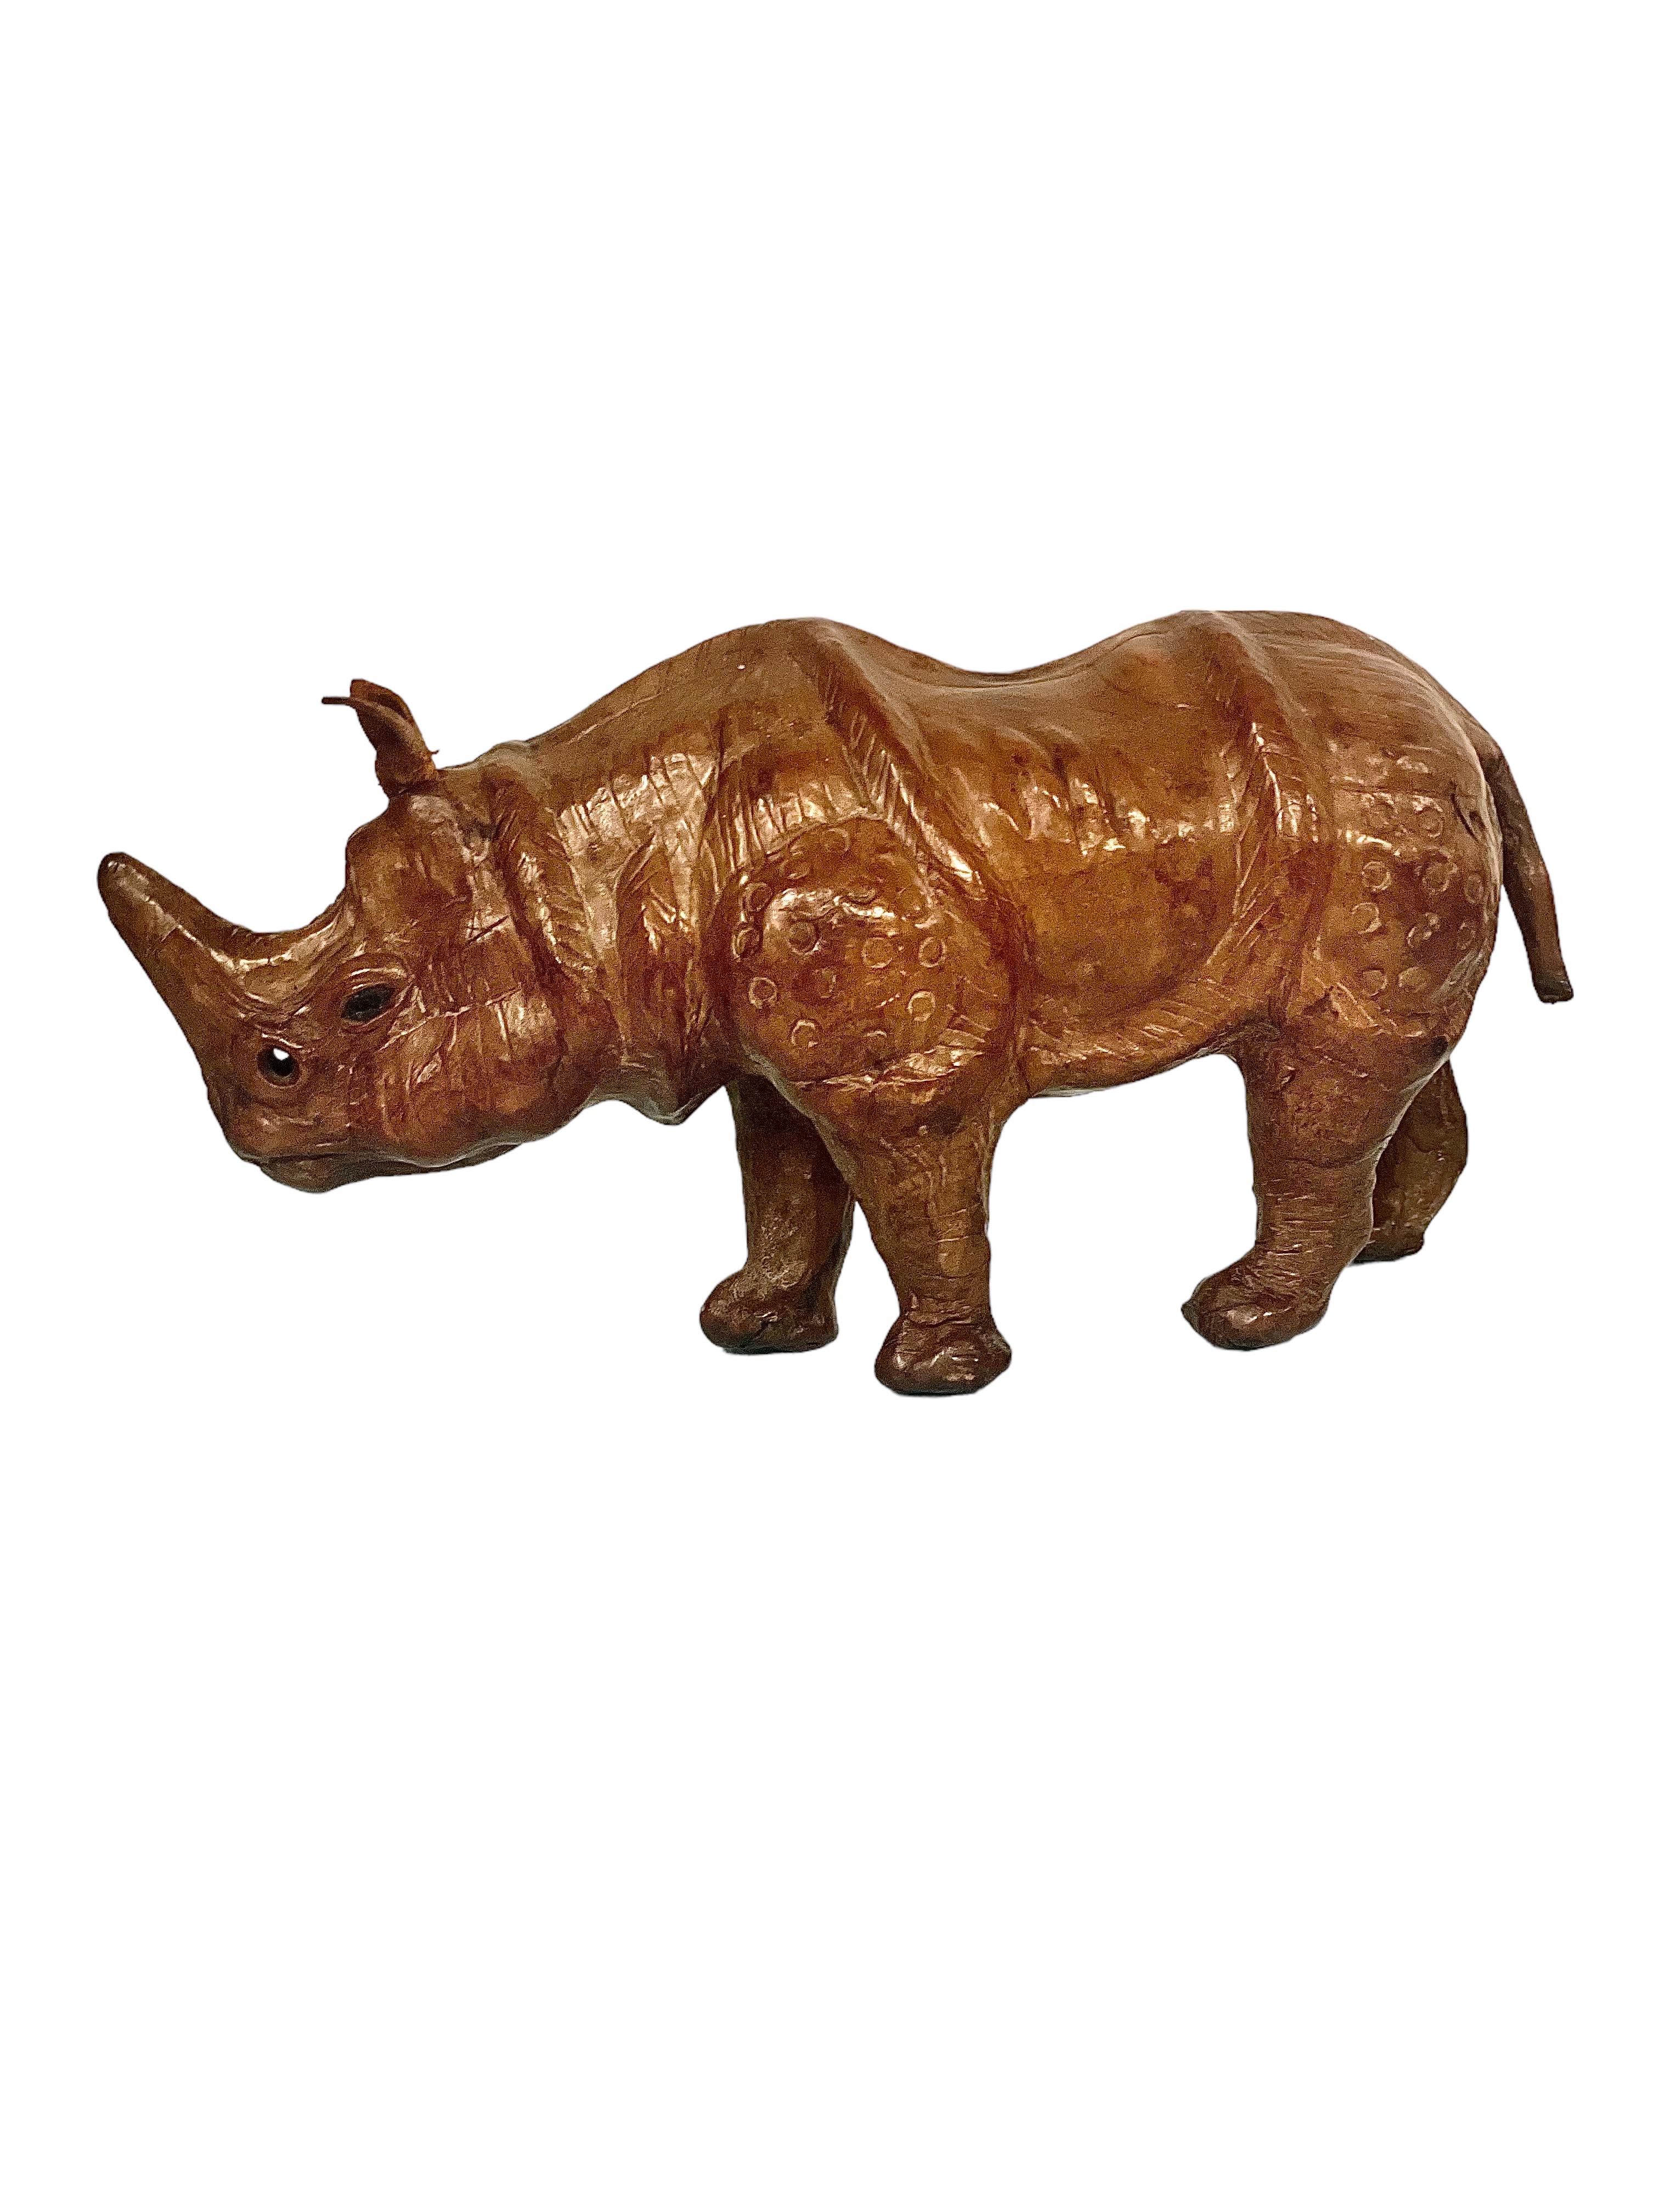 Un magnifique ornement vintage en forme de rhinocéros, sculpté à la main et recouvert de cuir, avec des yeux en verre noir. Datant des années 1950 environ, cette majestueuse petite sculpture est pleine de détails réalistes et artistiques et d'un